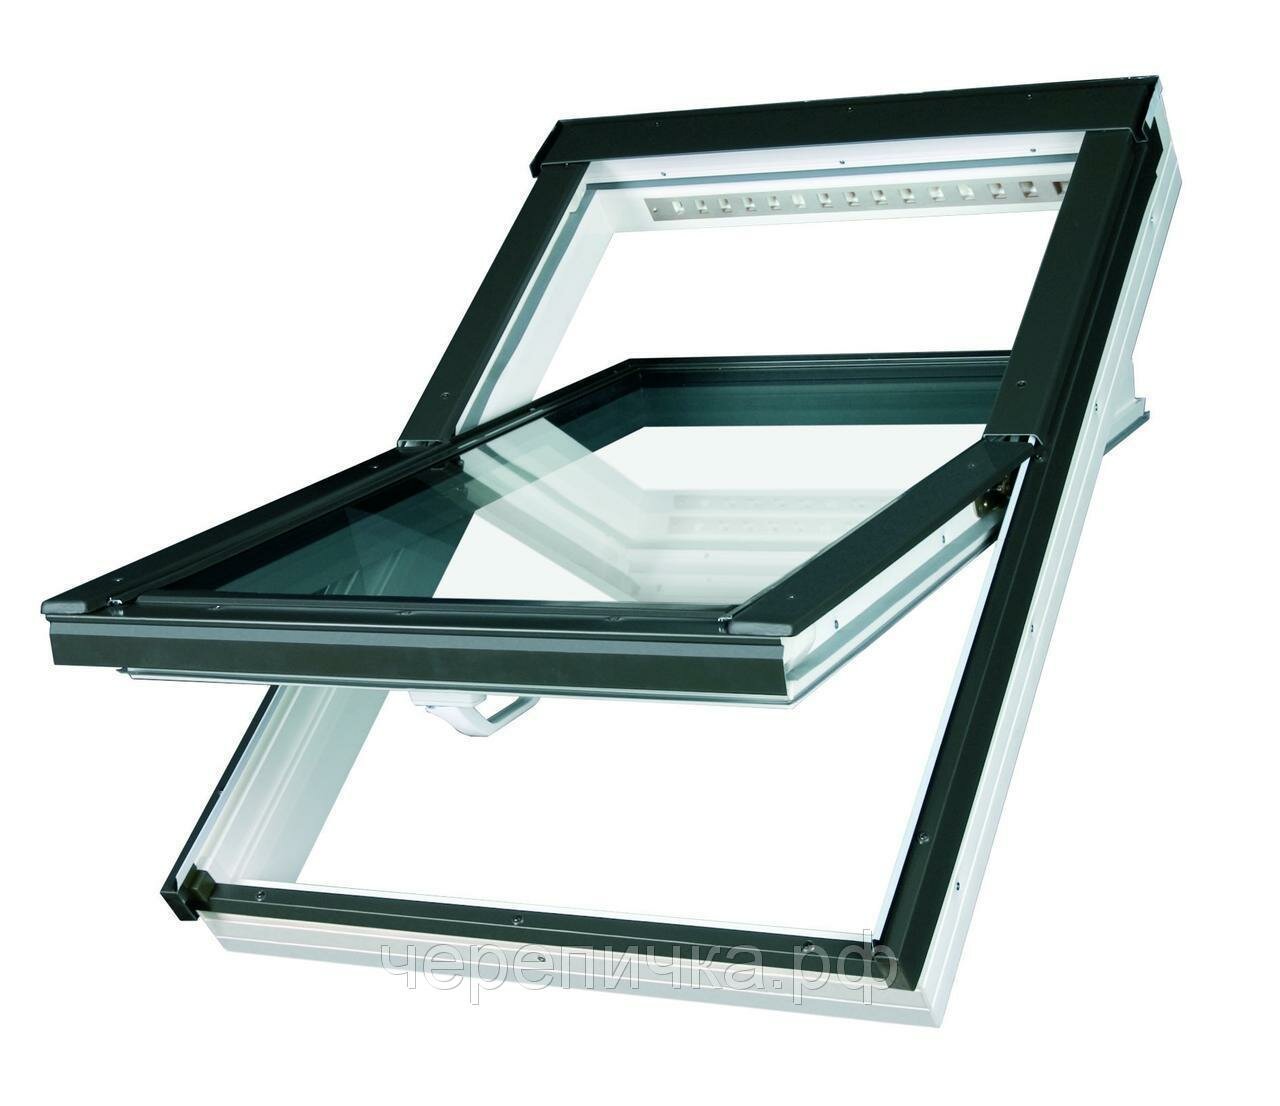 Мансардное окно Fakro PTP U4 PROFI ПВХ двухкамерным стеклопакетом (78*98)